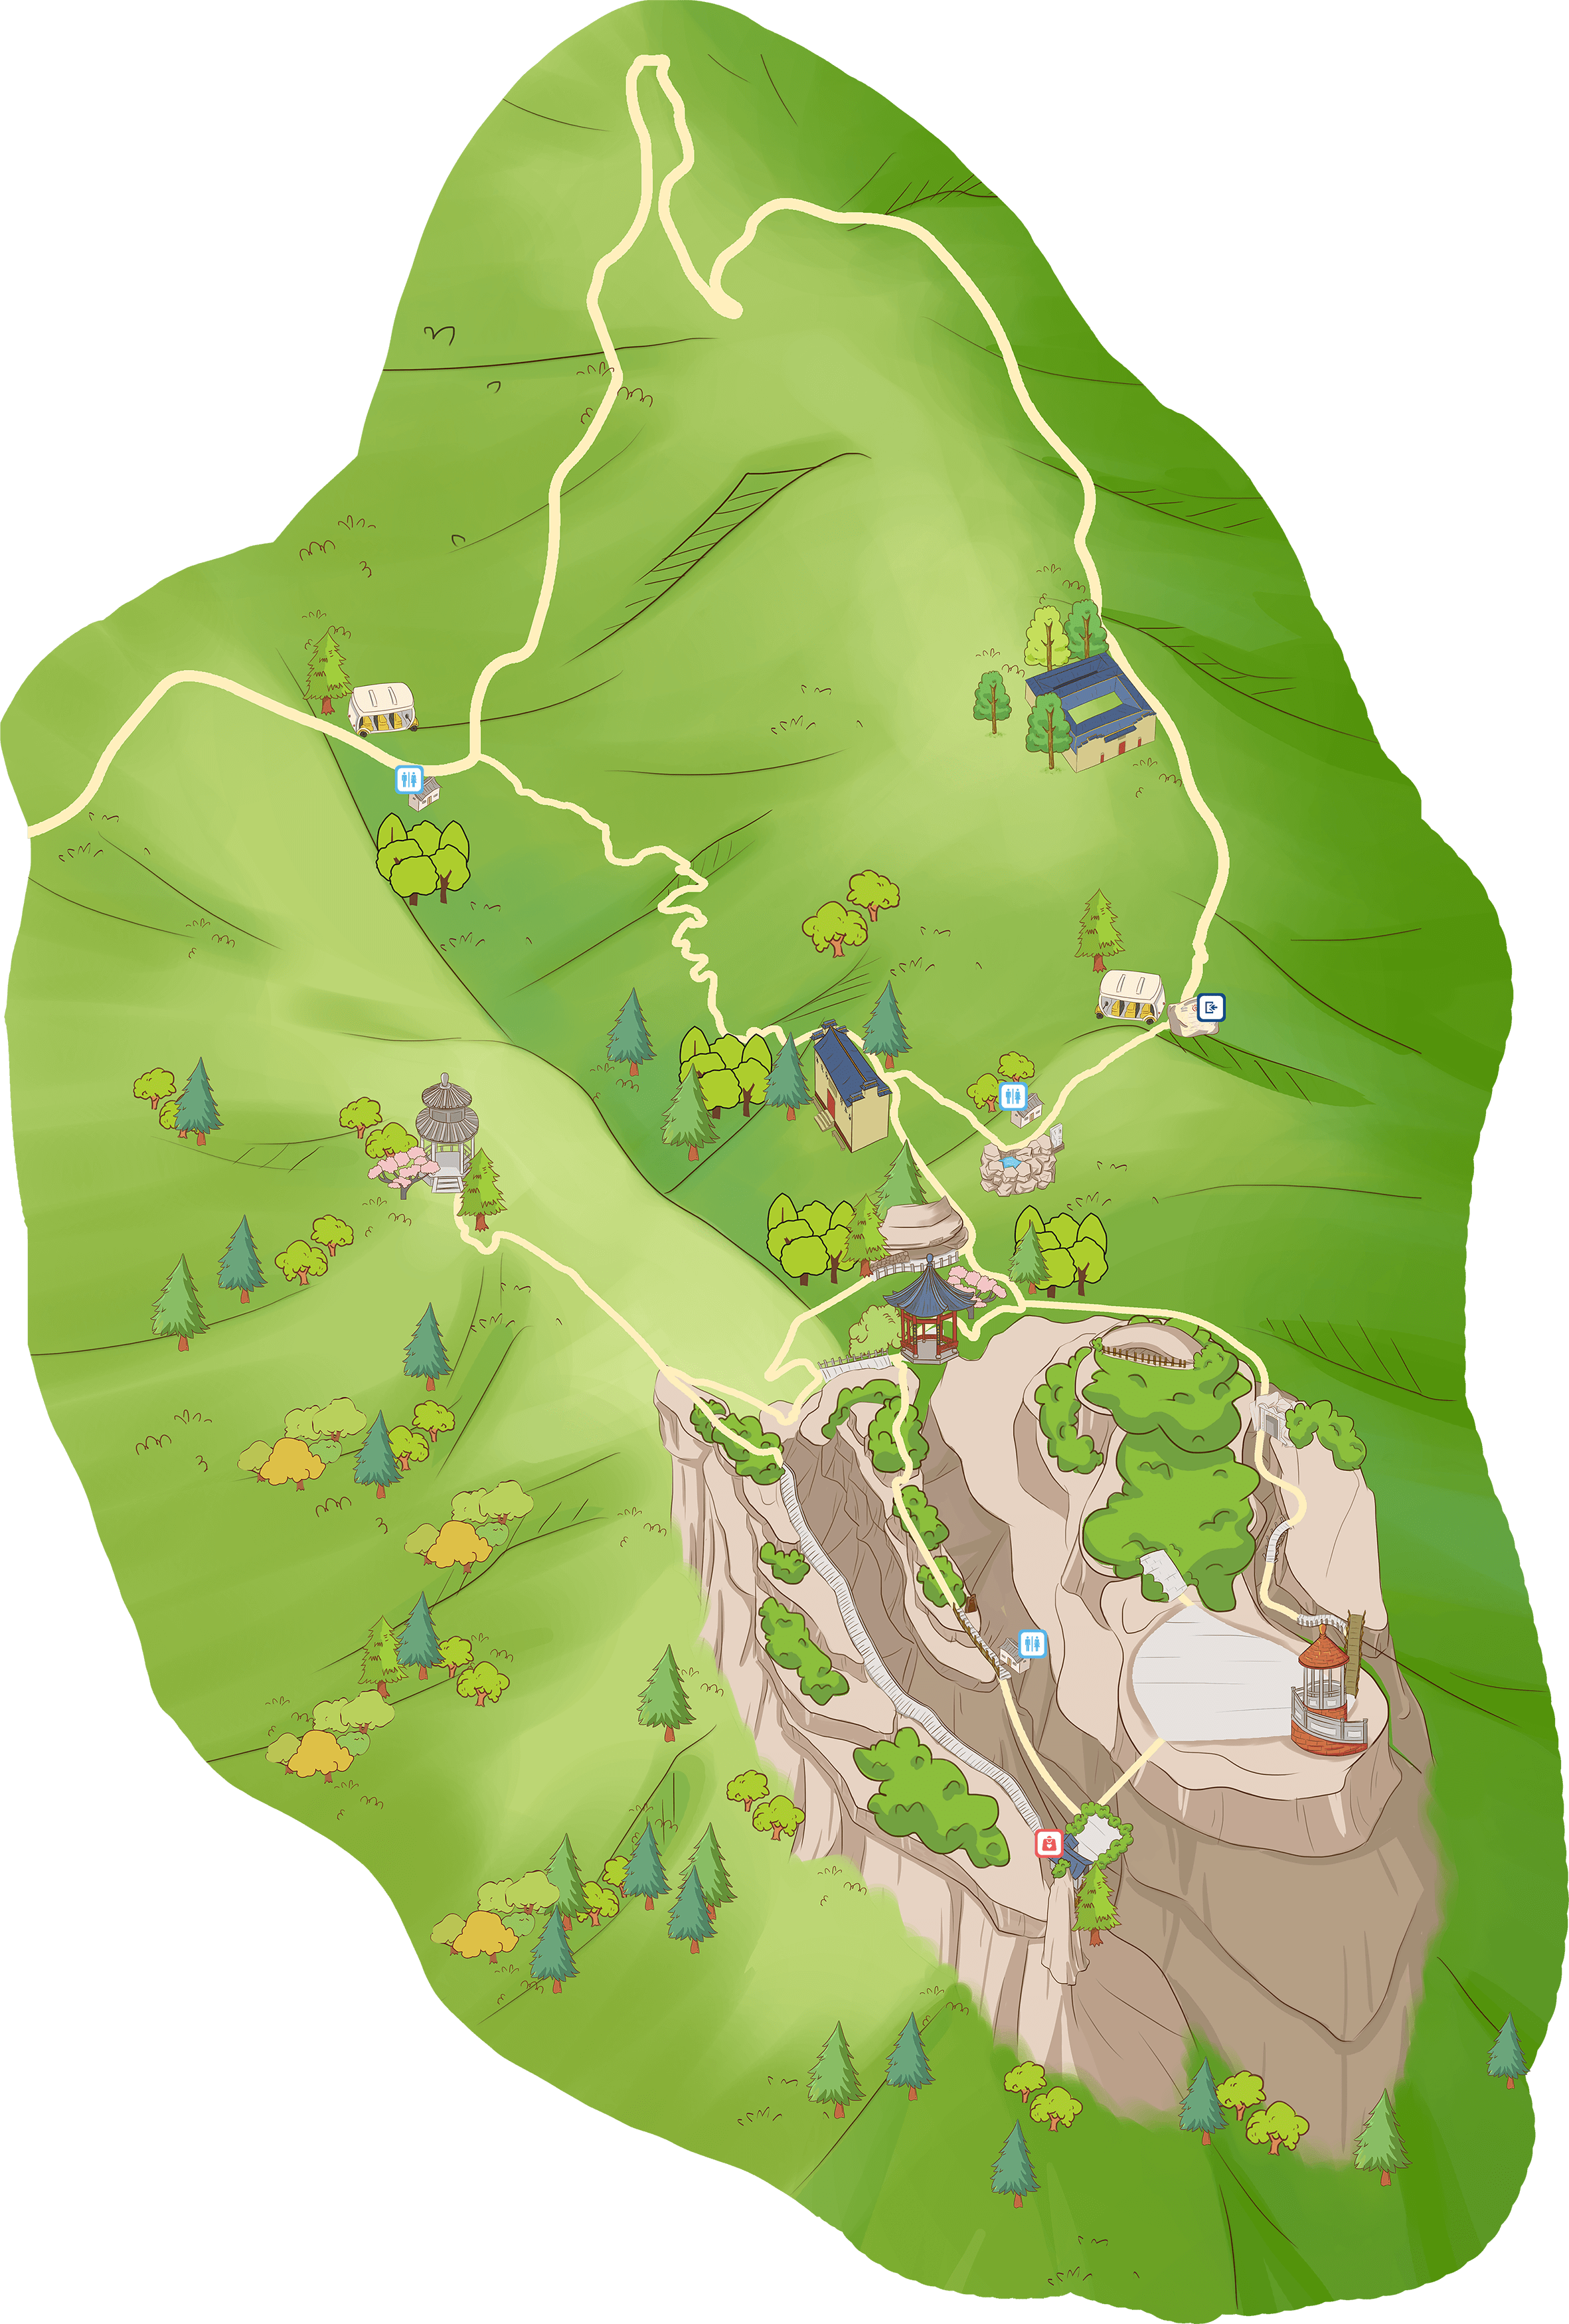 江郎山地图图片